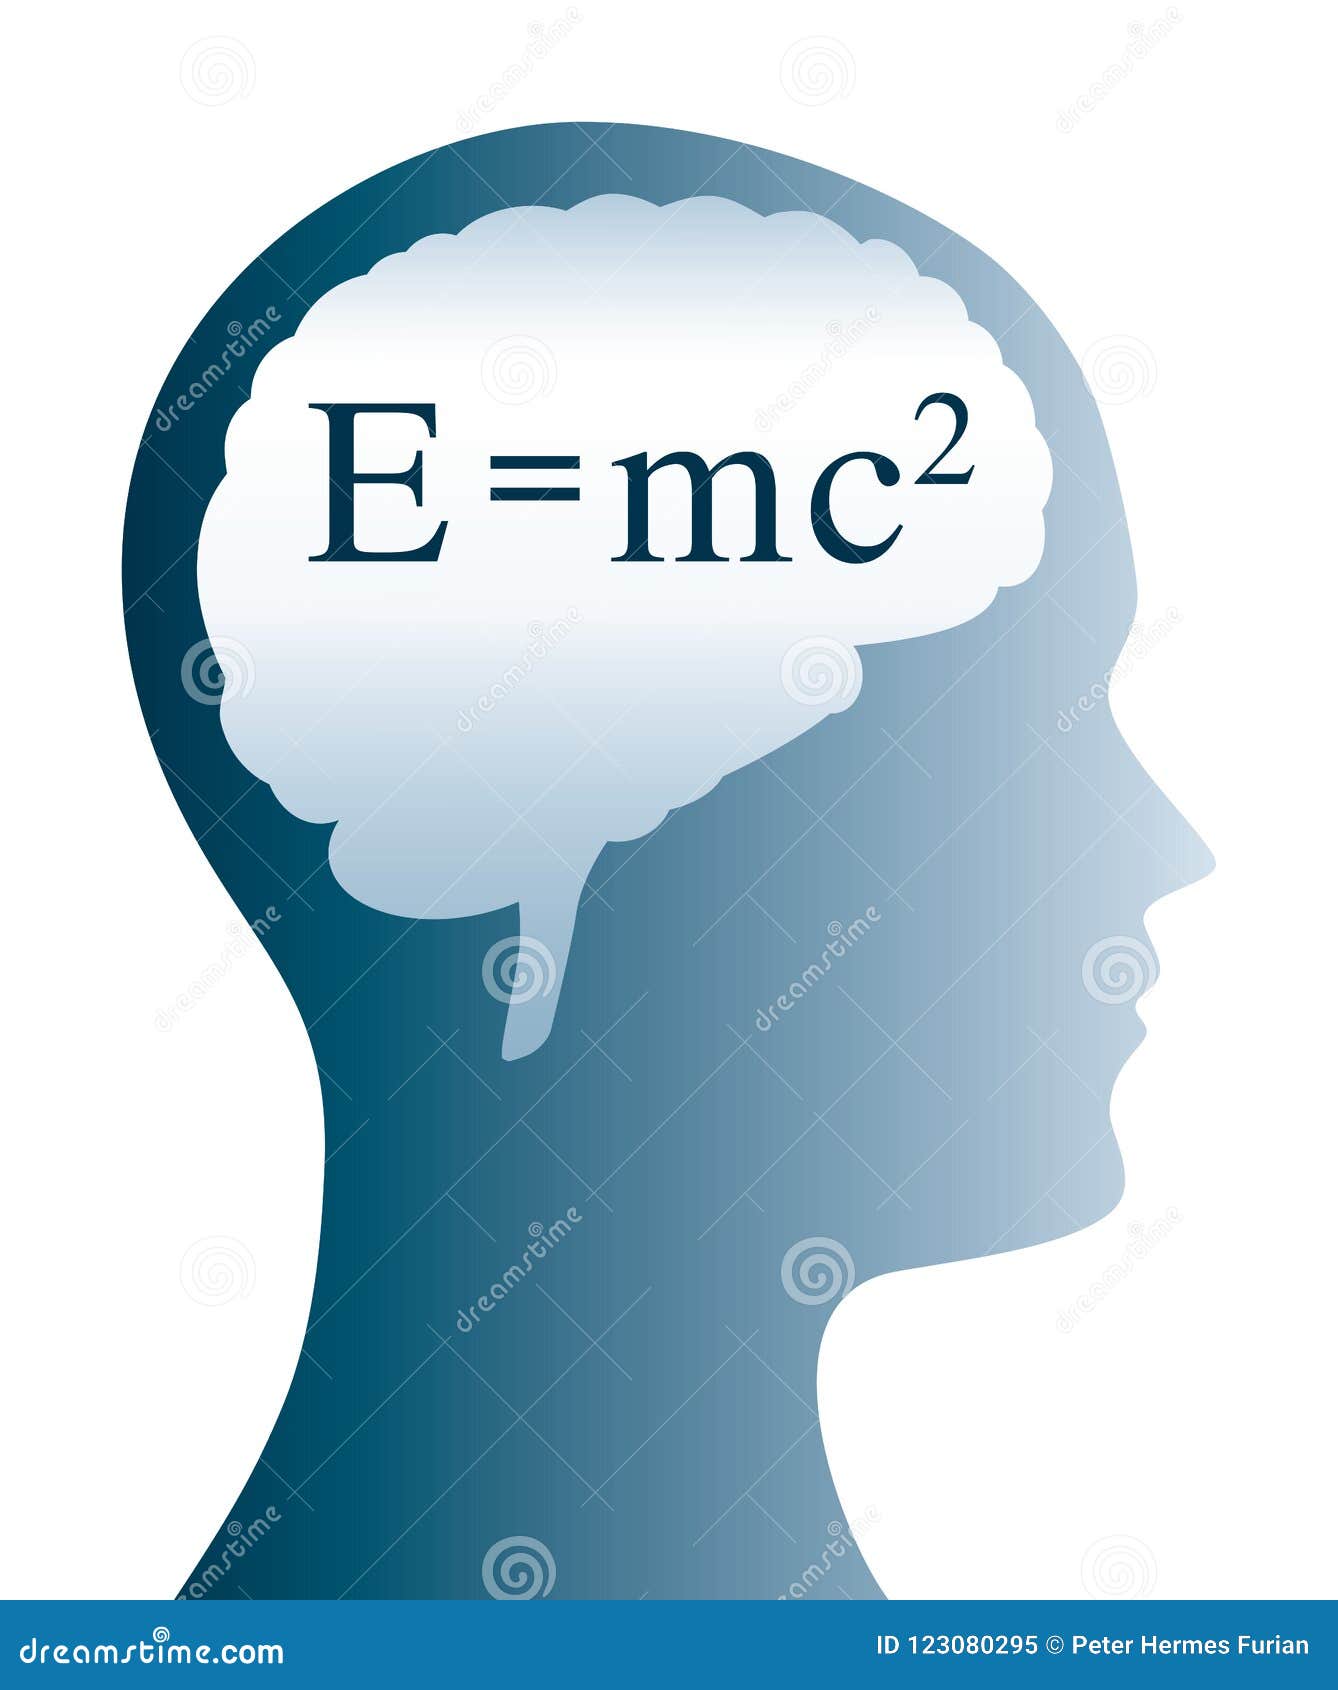 e=mc2 einstein formula in brain and head silhouette